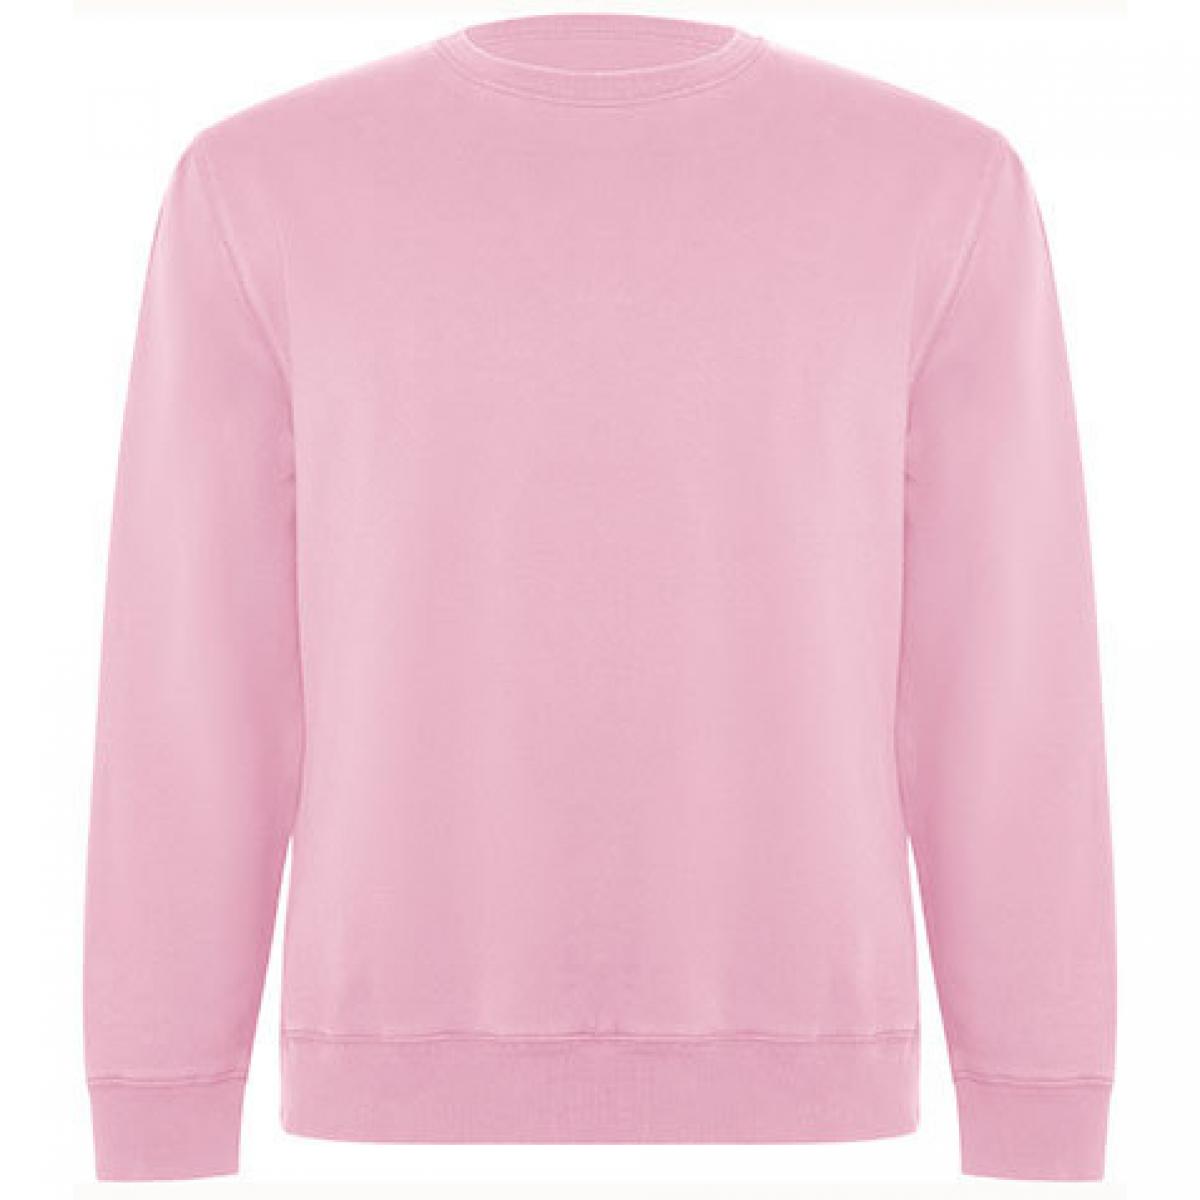 Hersteller: Roly Eco Herstellernummer: SU1071 Artikelbezeichnung: Batian Organic Sweatshirt - Unisex Farbe: Light Pink 48